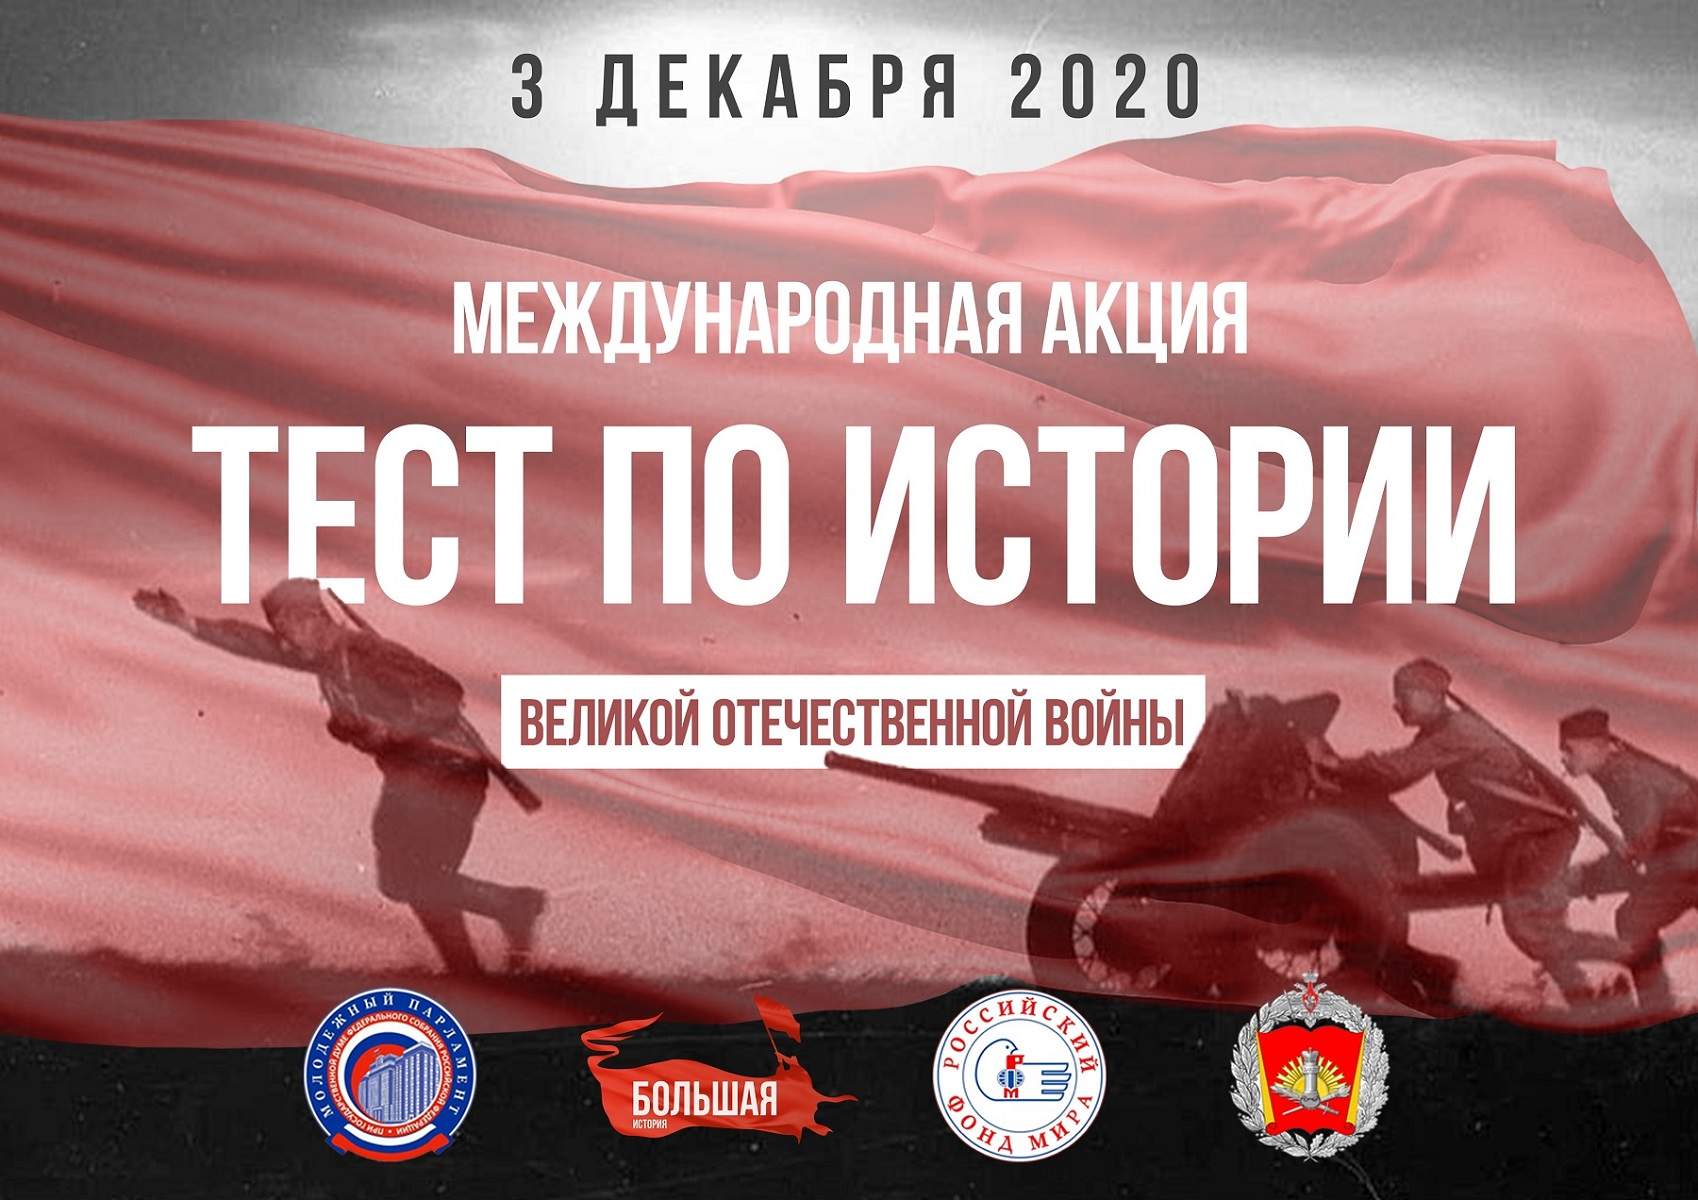 Молодые парламентарии Приморья приглашают пройти Тест по истории Великой Отечественной войны